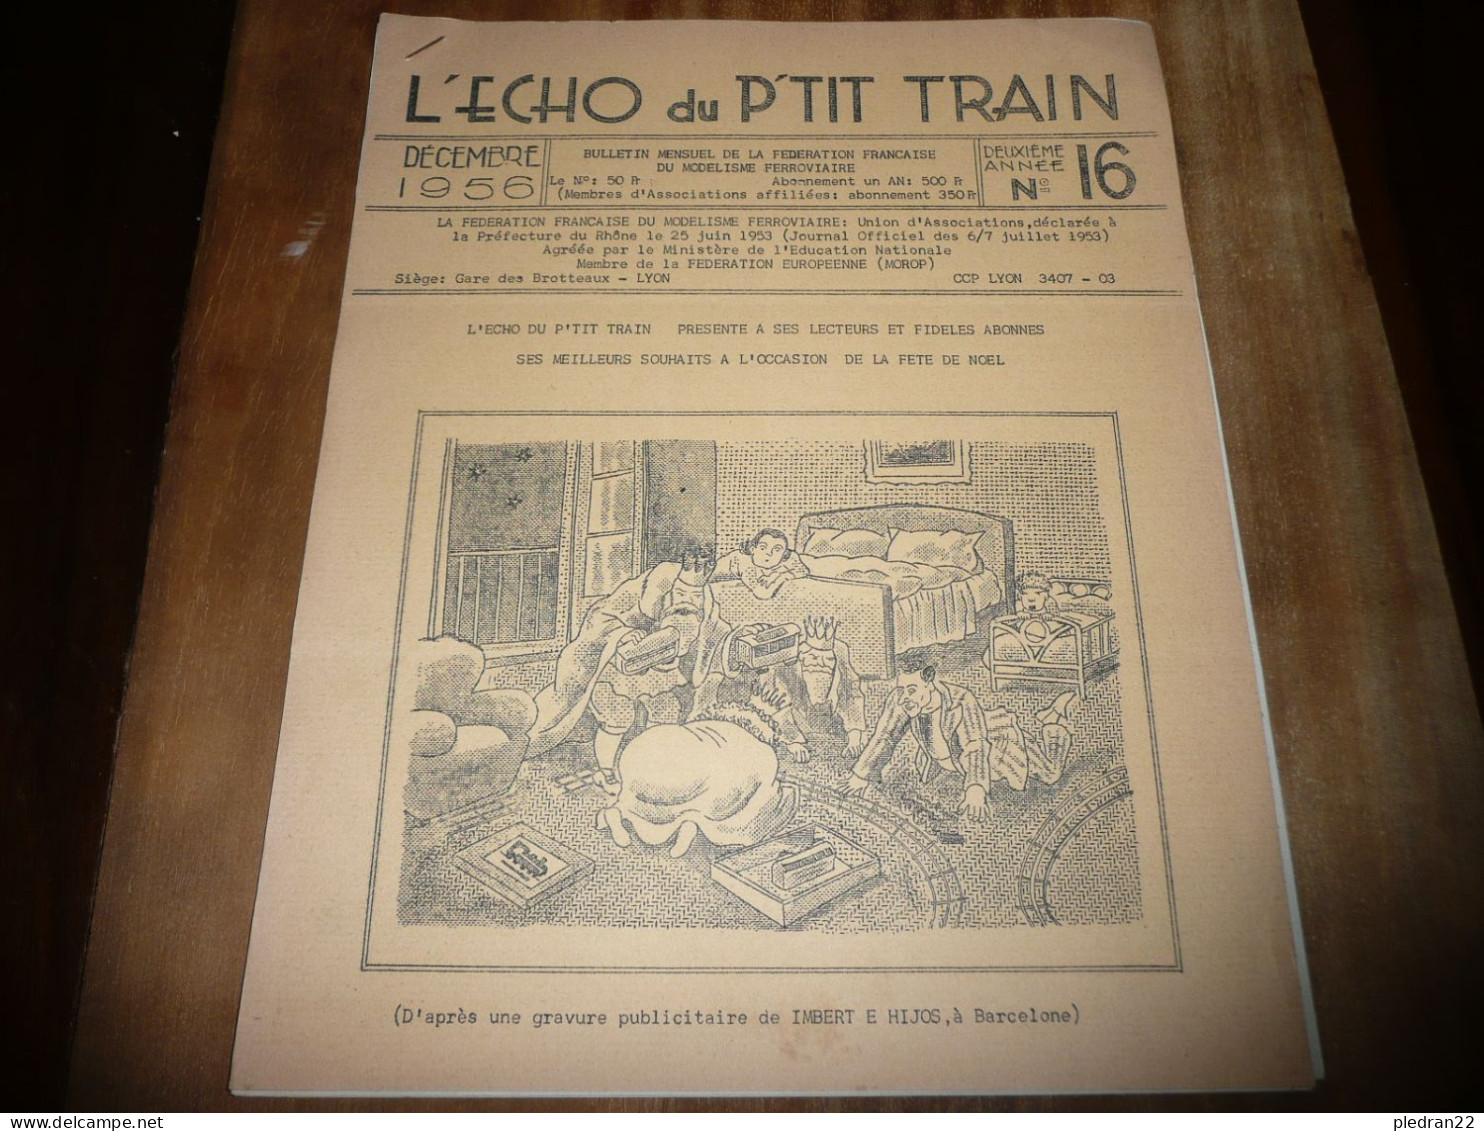 CHEMINS DE FER REVUE L'ECHO DU P'TIT TRAIN N° 16 DECEMBRE 1956 MODELISME FERROVIAIRE GARE DES BROTTEAUX LYON - Railway & Tramway